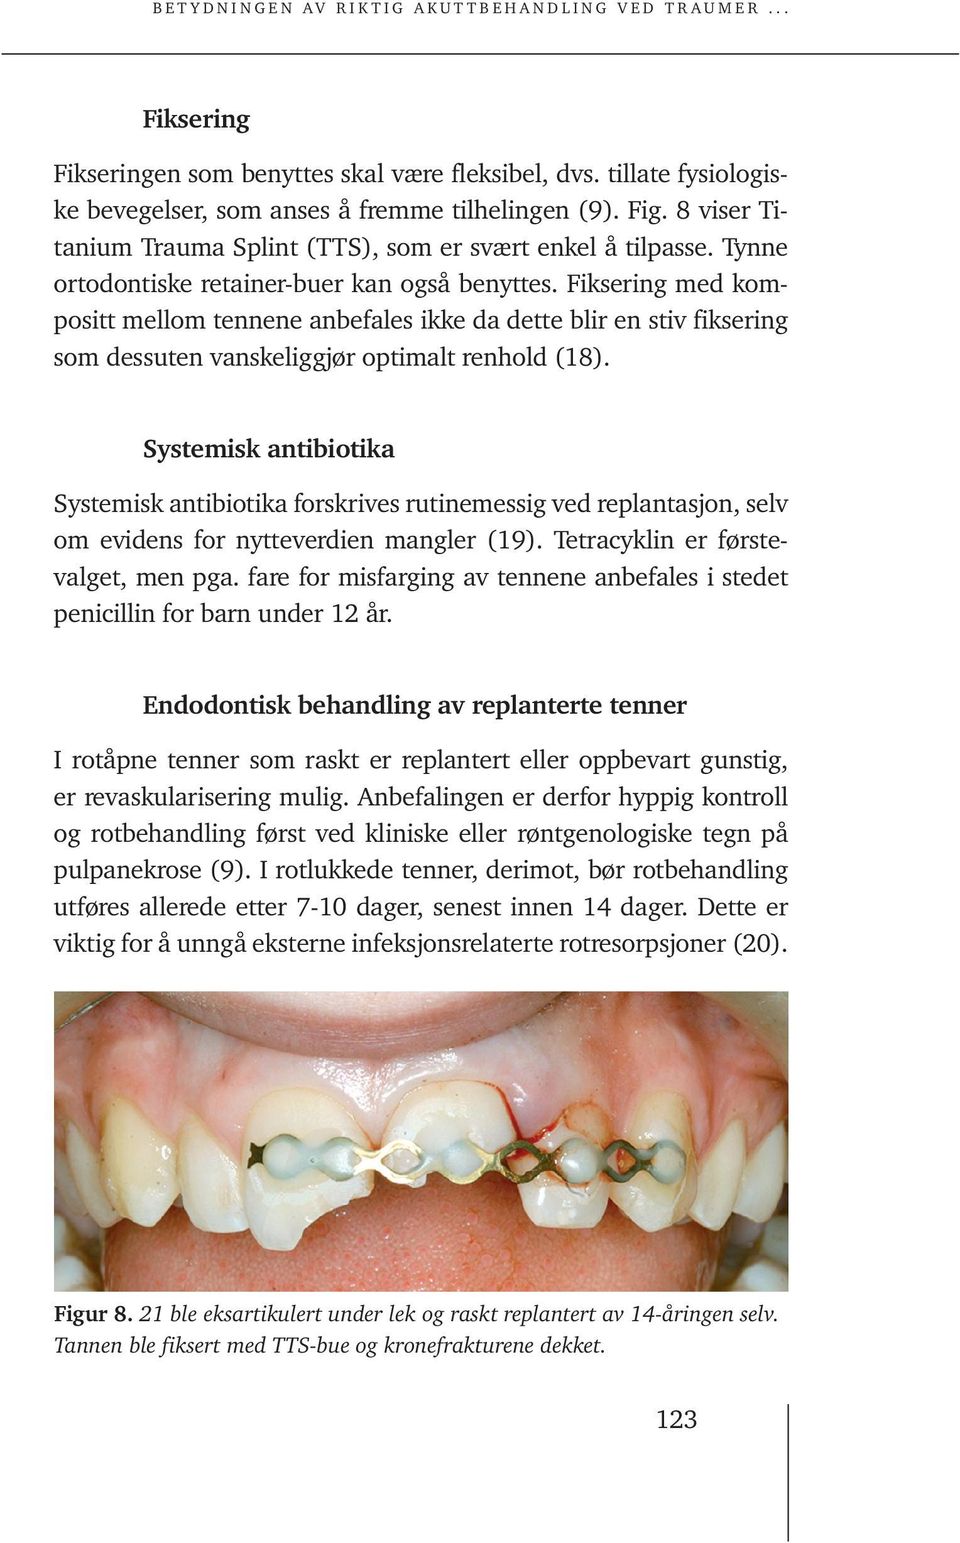 Fiksering med kompositt mellom tennene anbefales ikke da dette blir en stiv fiksering som dessuten vanskeliggjør optimalt renhold (18).